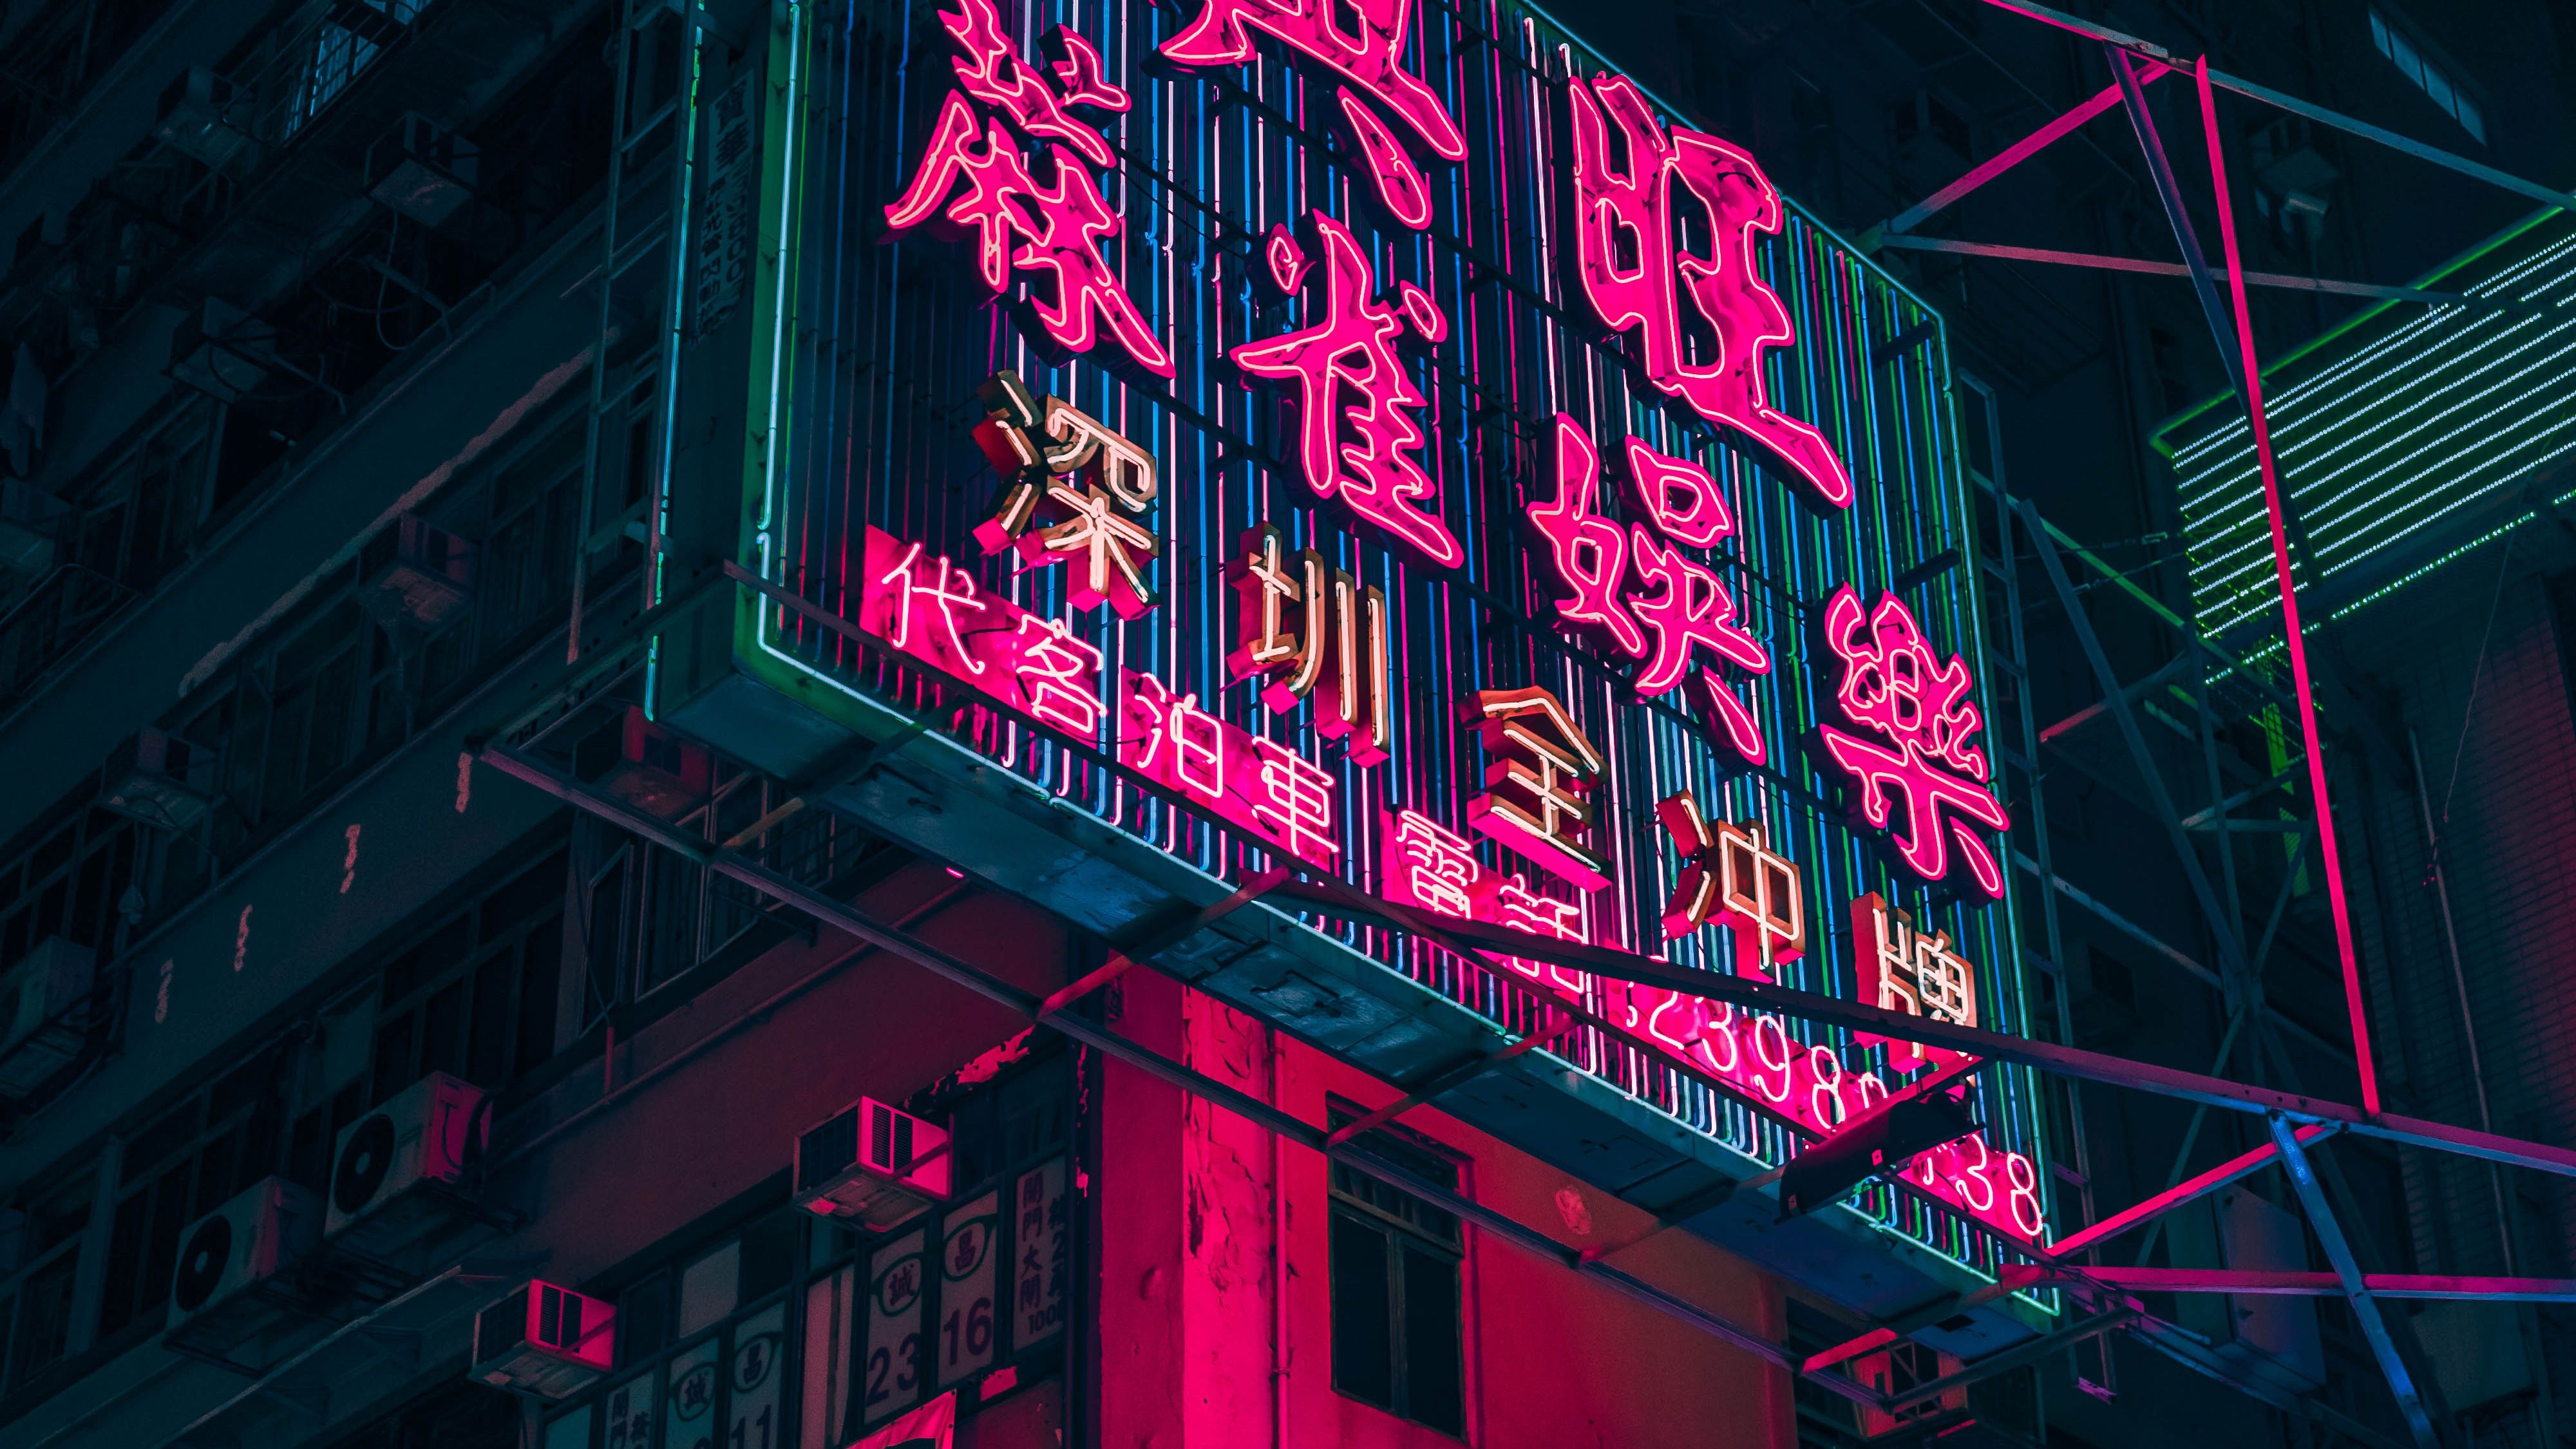 Hong Kong City Neon City, HD World, 4k Wallpaper, Image